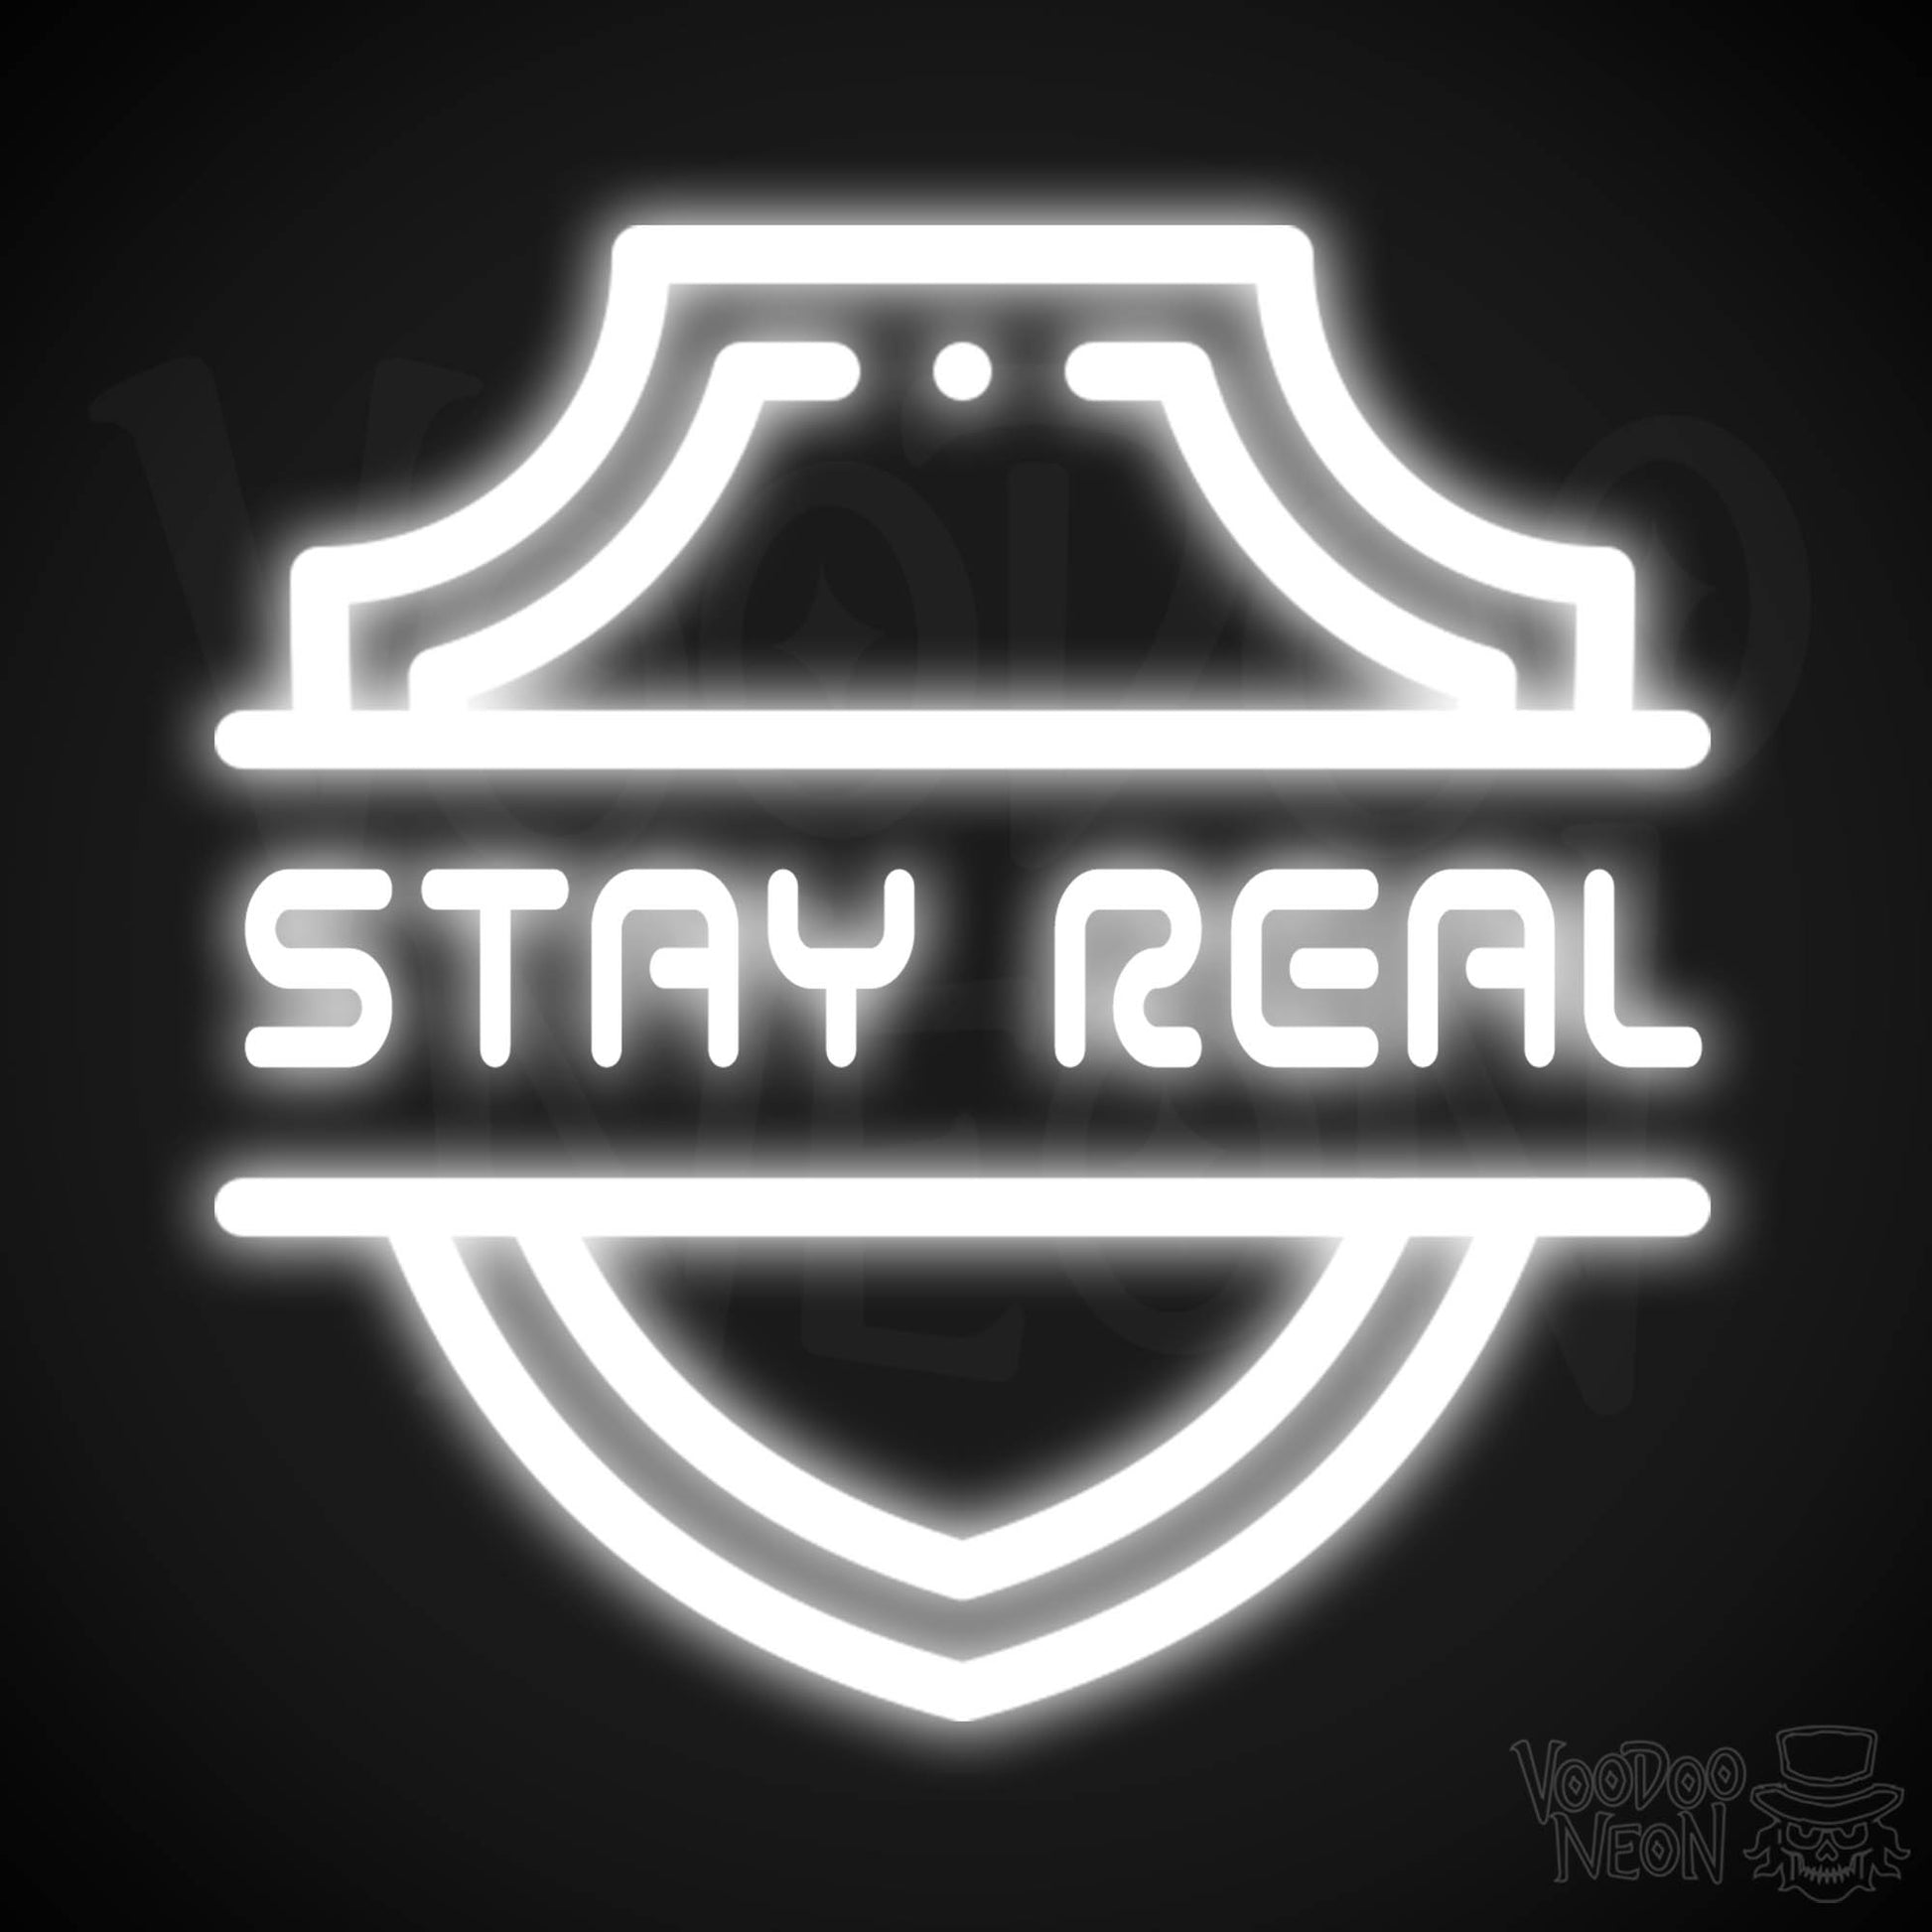 Stay Real Neon Sign - Neon Stay Real Sign - Neon Wall Art - Color White